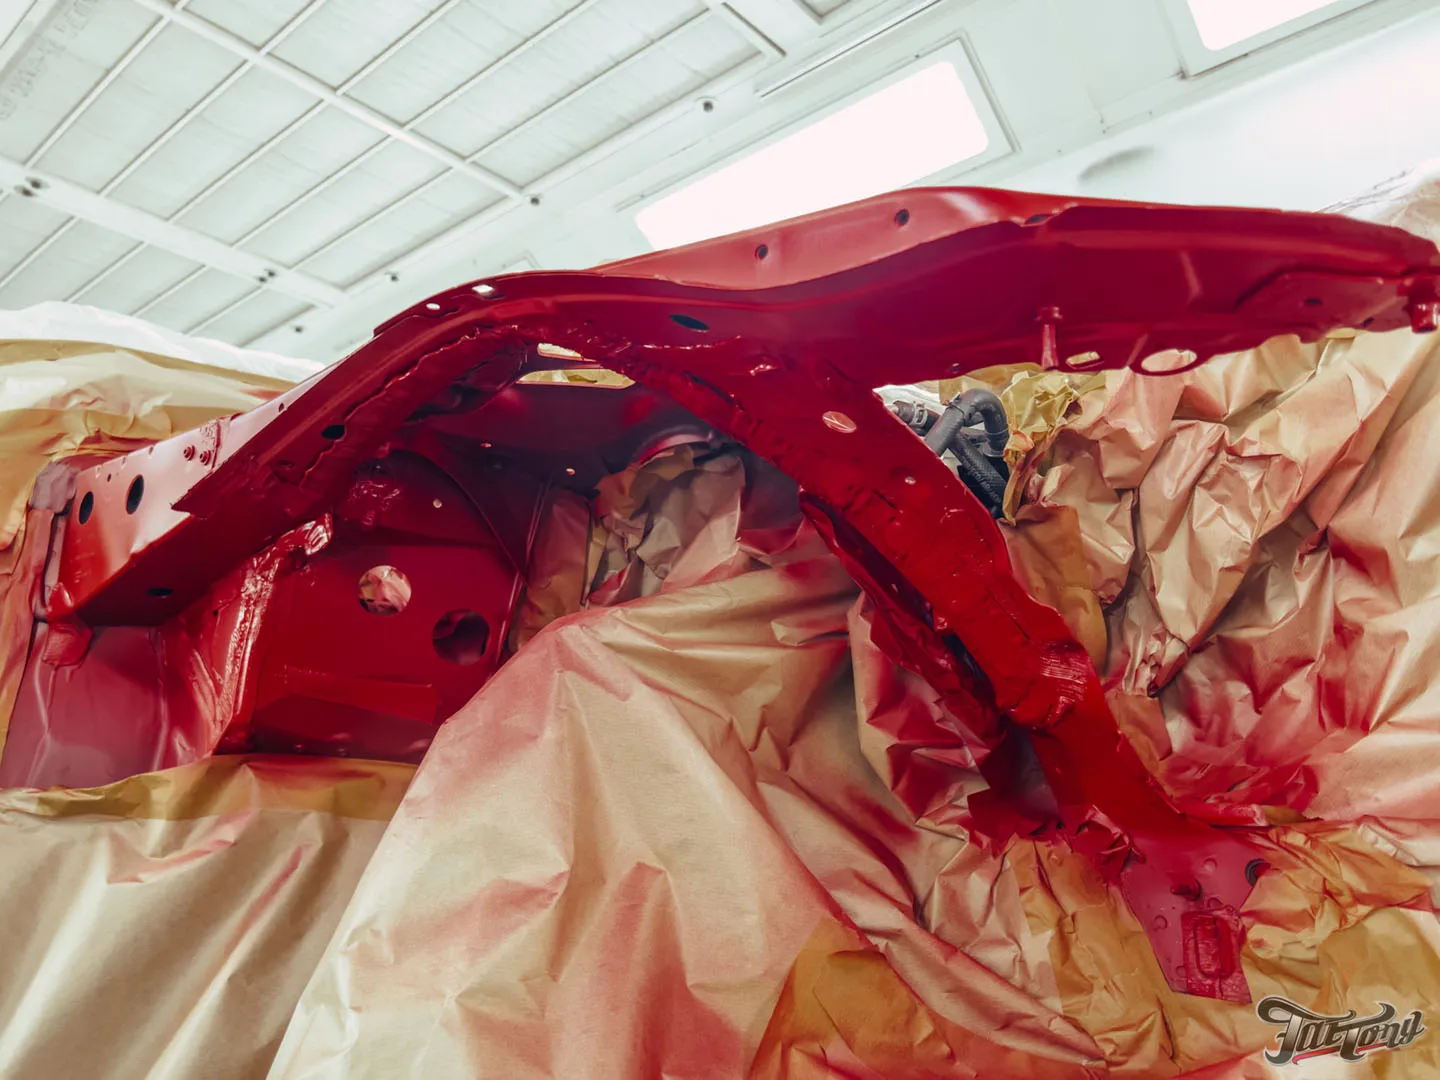 Кузовной ремонт Audi A7 после ДТП. Почему колорист и маляр должны работать бок о бок и как подобрать нужный цвет?